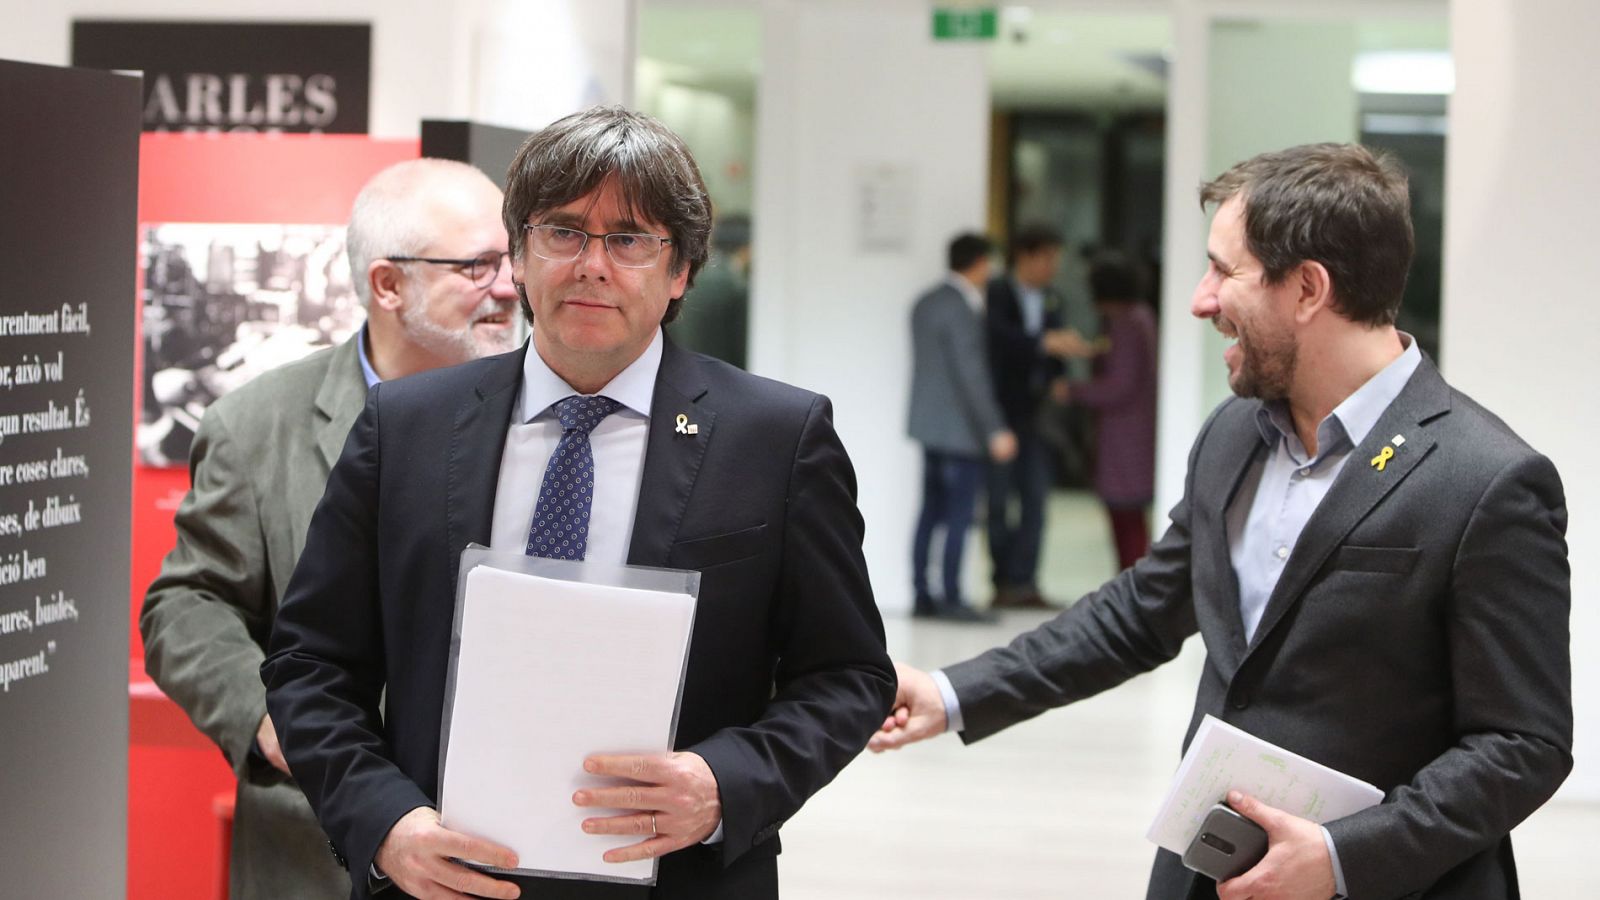 Catatluña: Puigdemont entra al Parlamento Europeo: "La justicia europea dice que somos eurodiputados" - RTVE.es